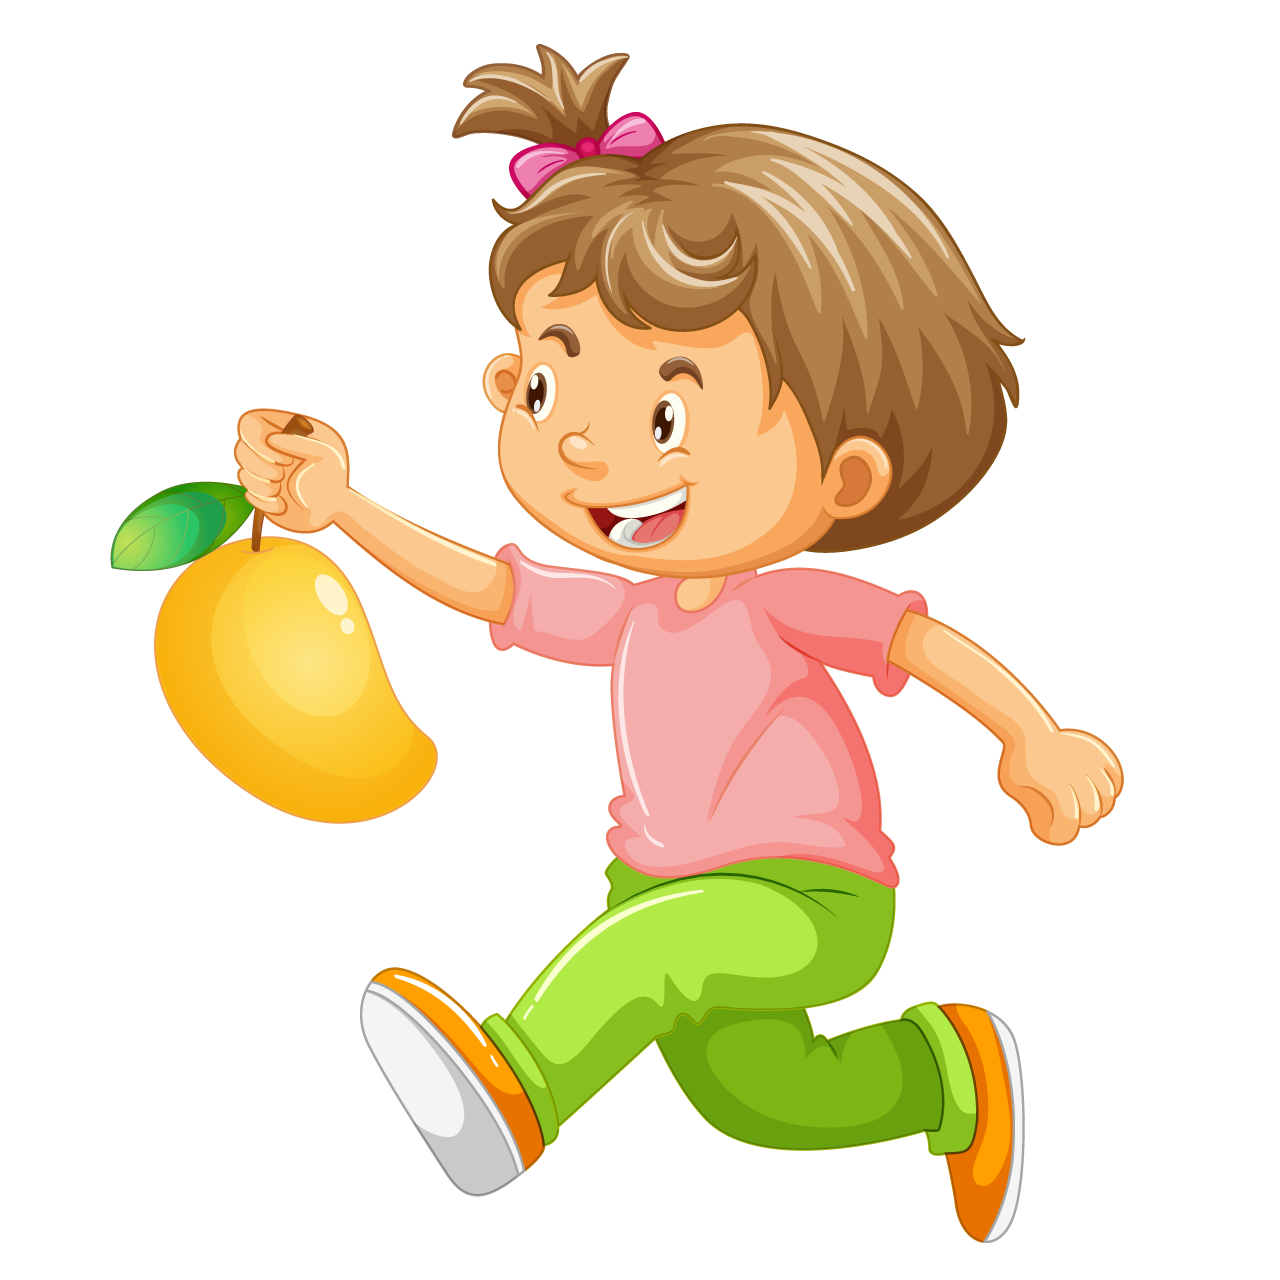 Boy holding mango fruit cartoon character isolated clipart image